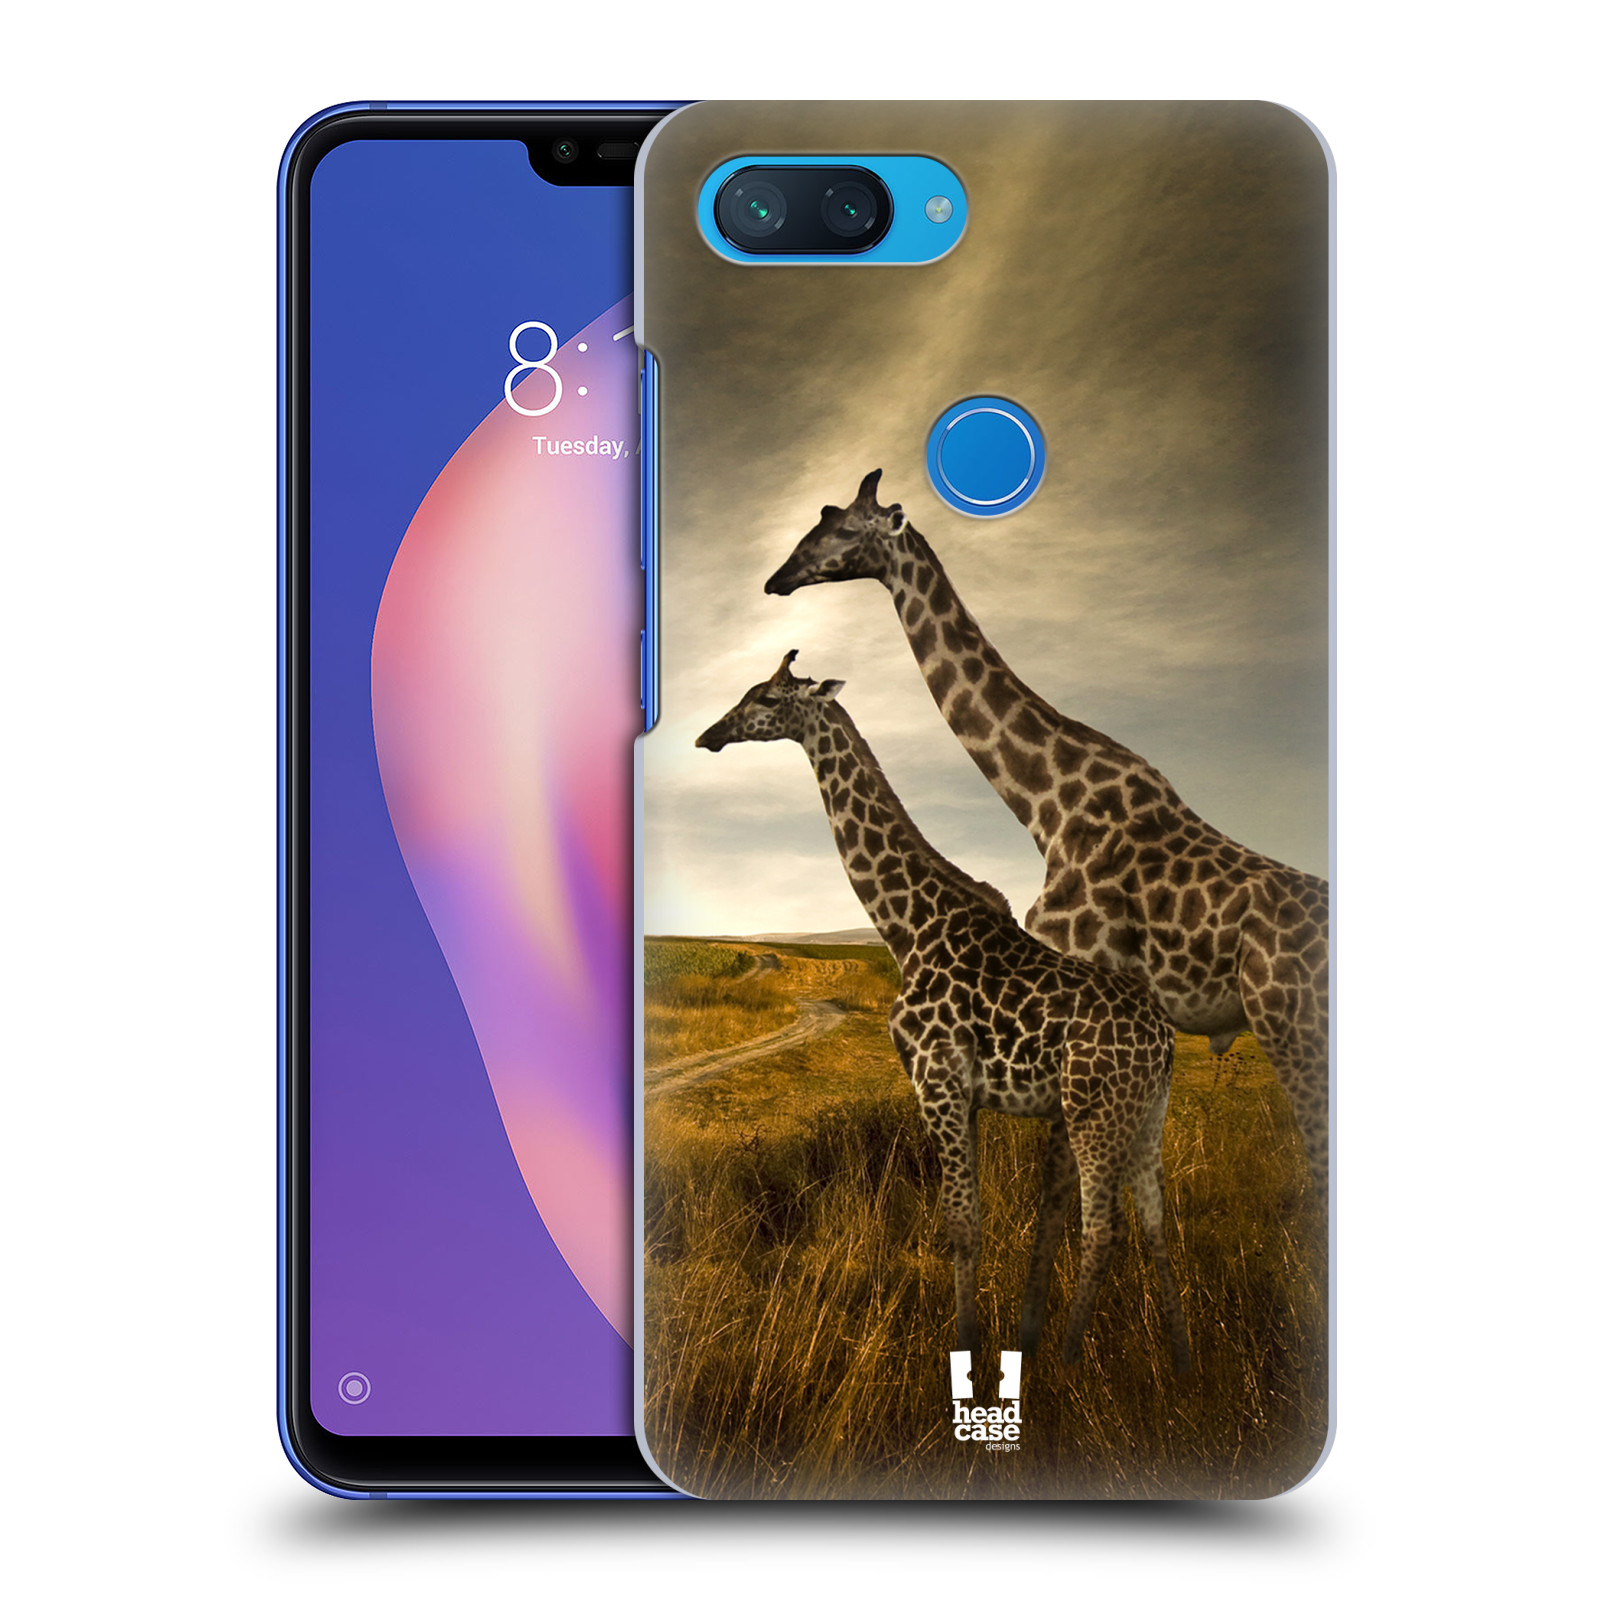 Zadní obal pro mobil Xiaomi Mi 8 LITE - HEAD CASE - Svět zvířat žirafy